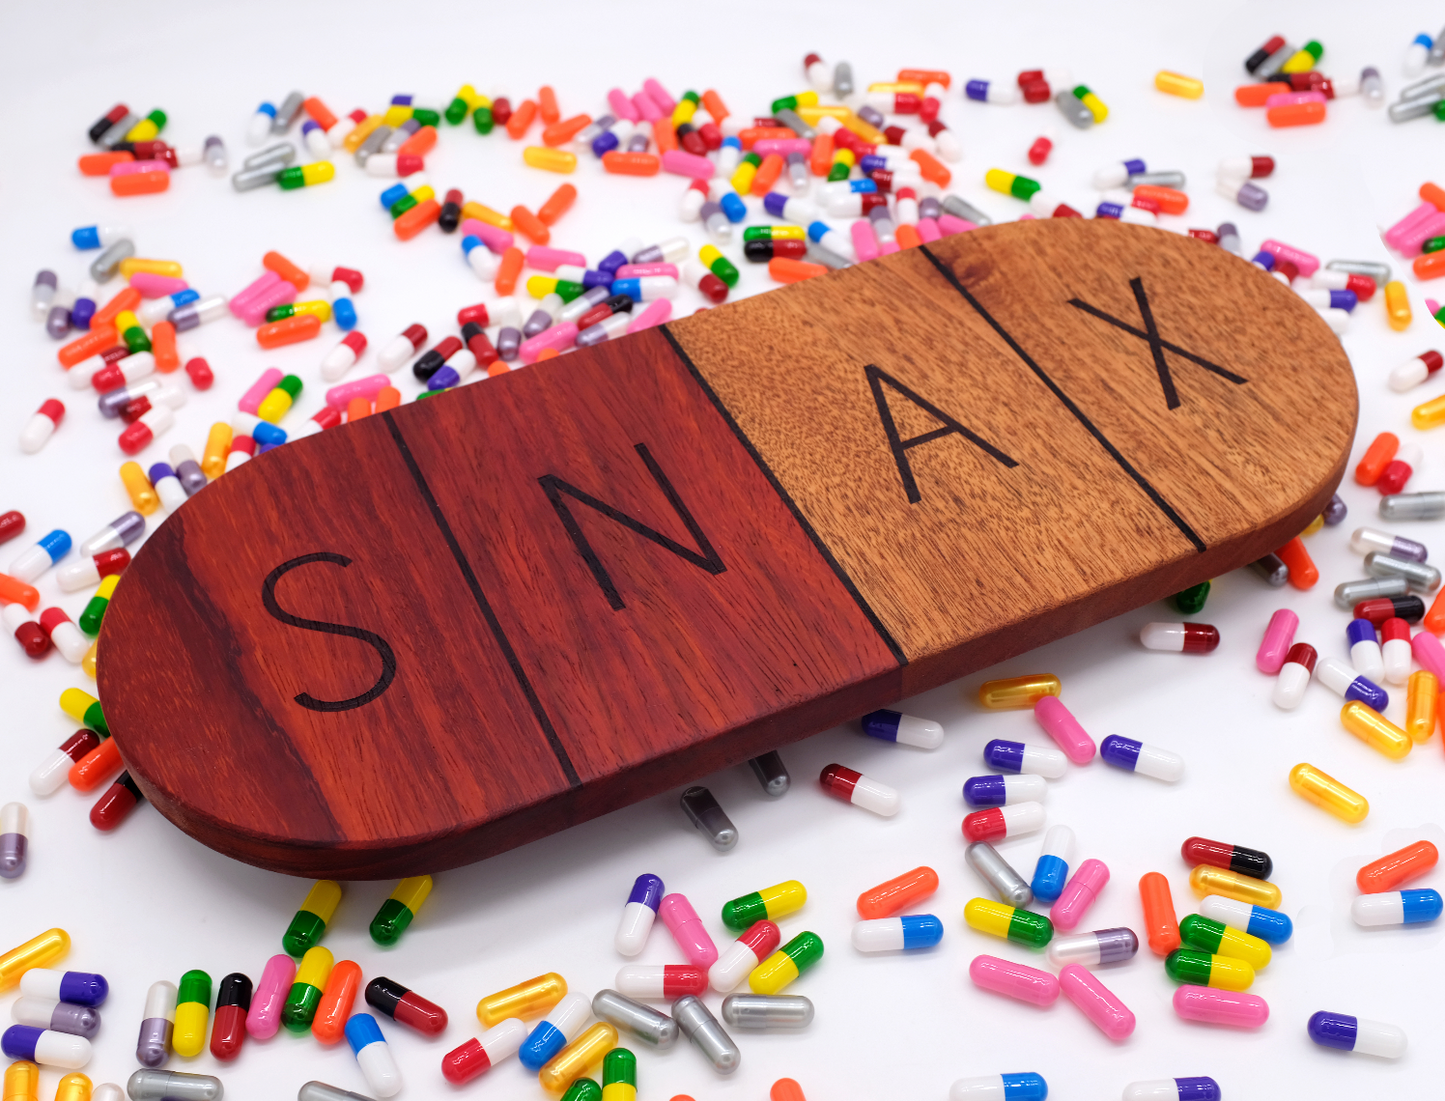 SNAX Board